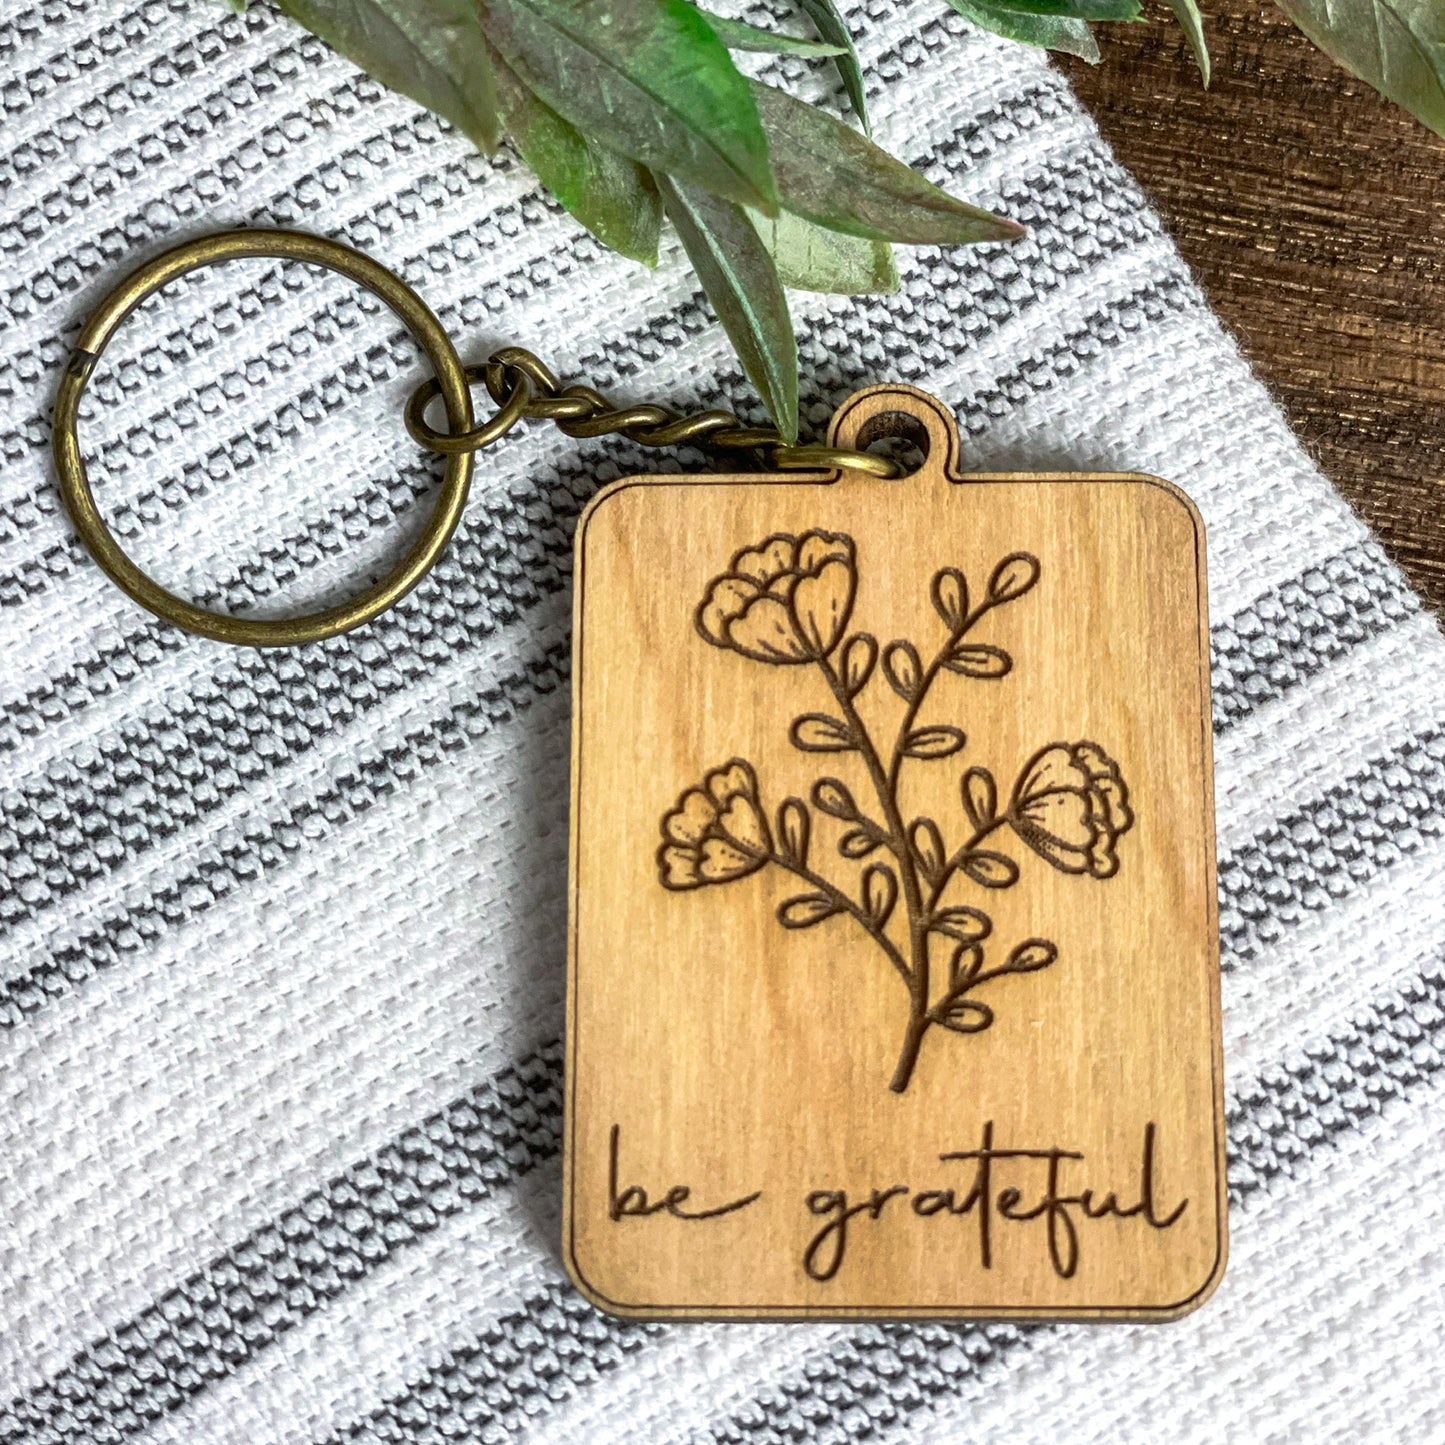 Be grateful - flower keychain